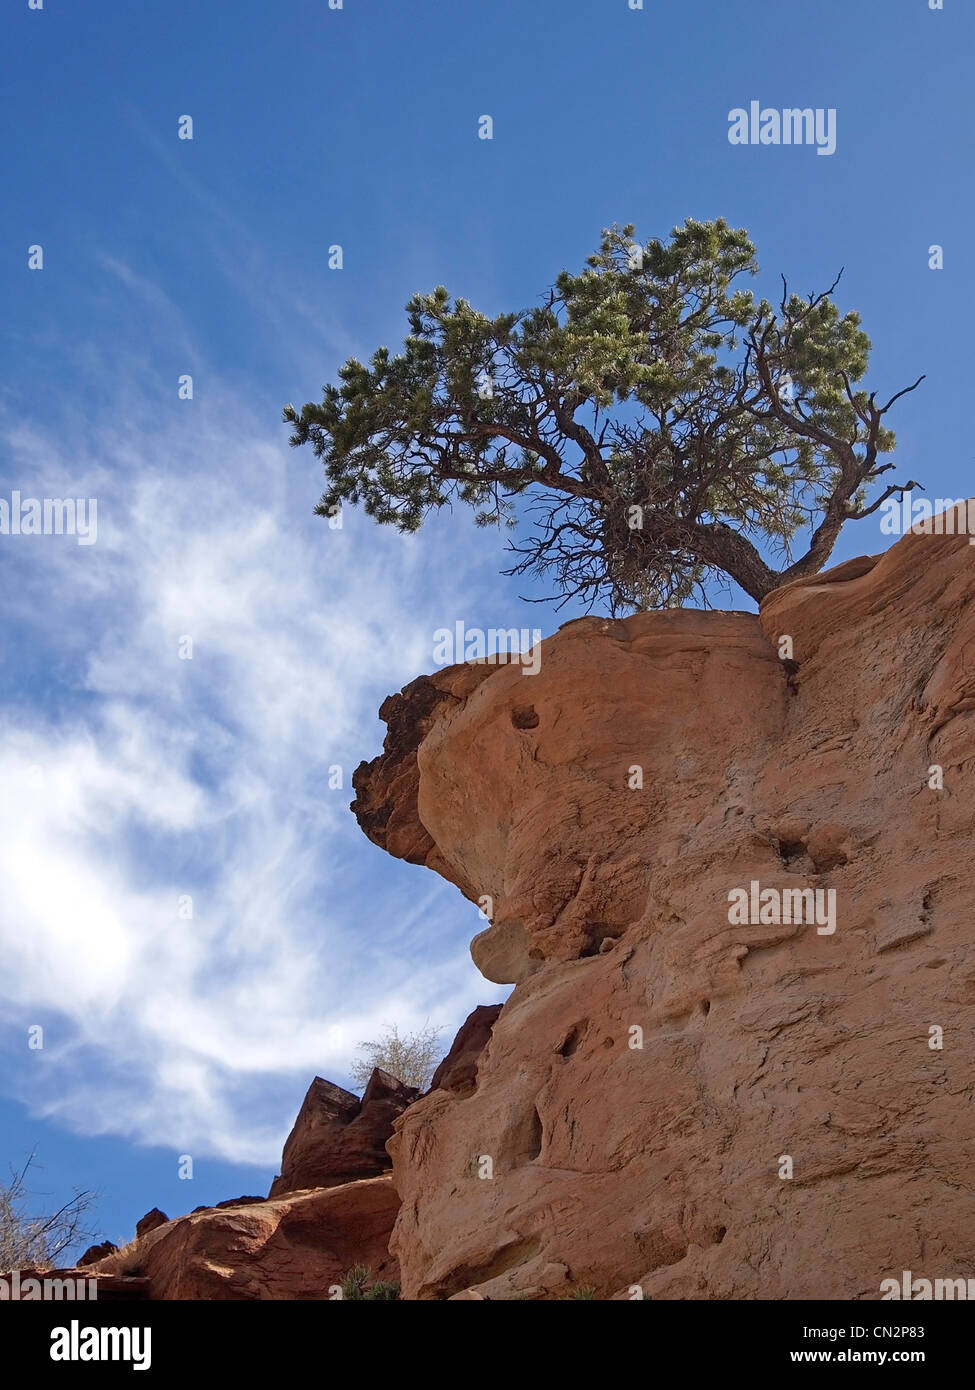 Un piccolo pinyon pine tree sul bordo di una scogliera nel deserto. Foto Stock